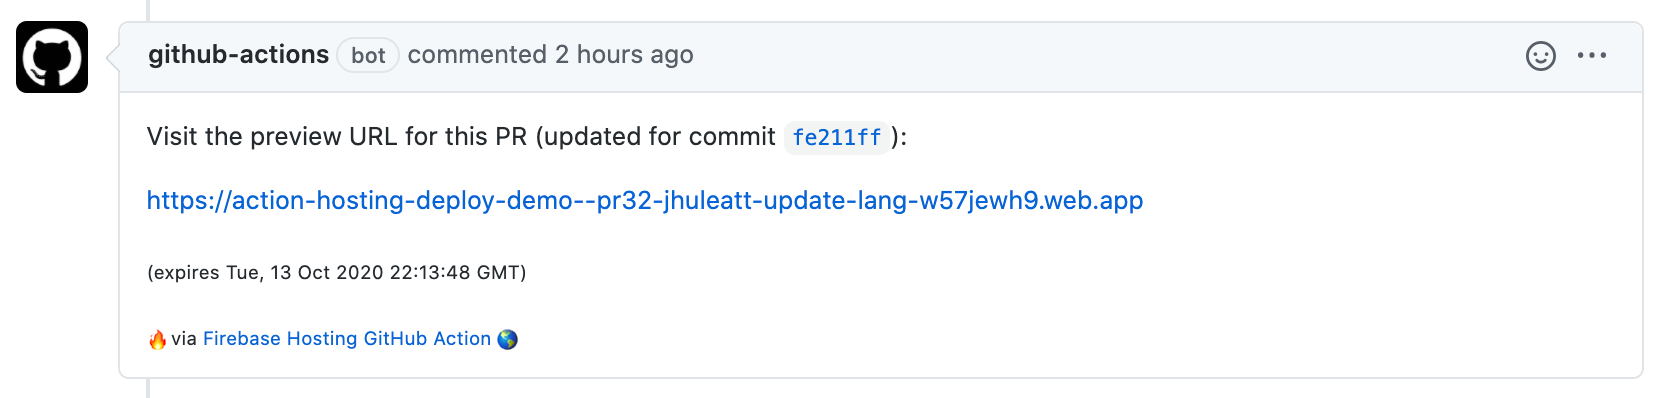 imagen del comentario de solicitud de extracción de la acción de GitHub con URL de vista previa